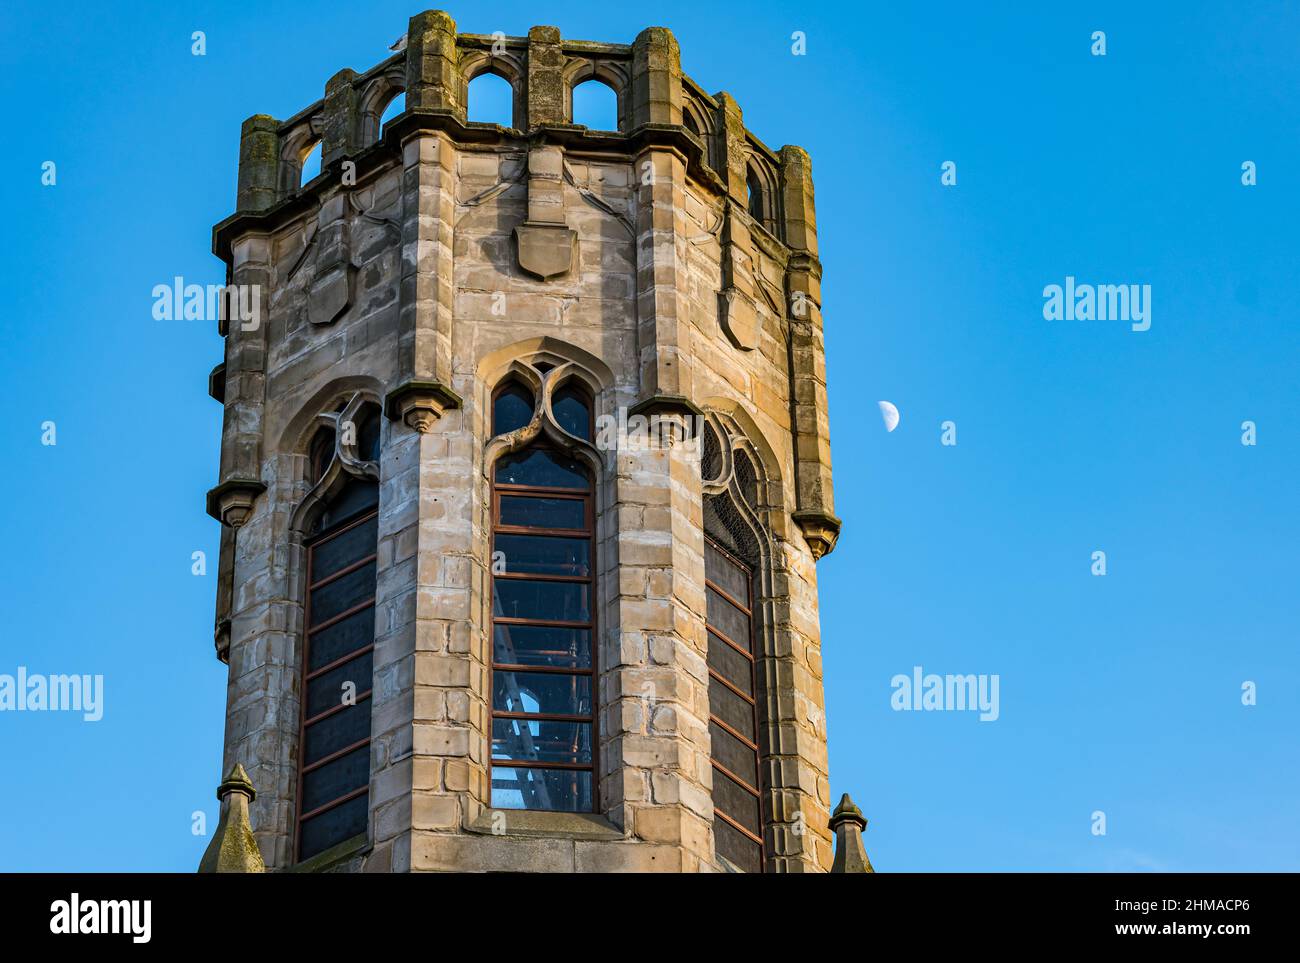 Sechseckiger Kirchturm mit einem Halbmond, der in hellblauem Himmel sichtbar ist, Leith, Edinburgh, Schottland, Großbritannien Stockfoto